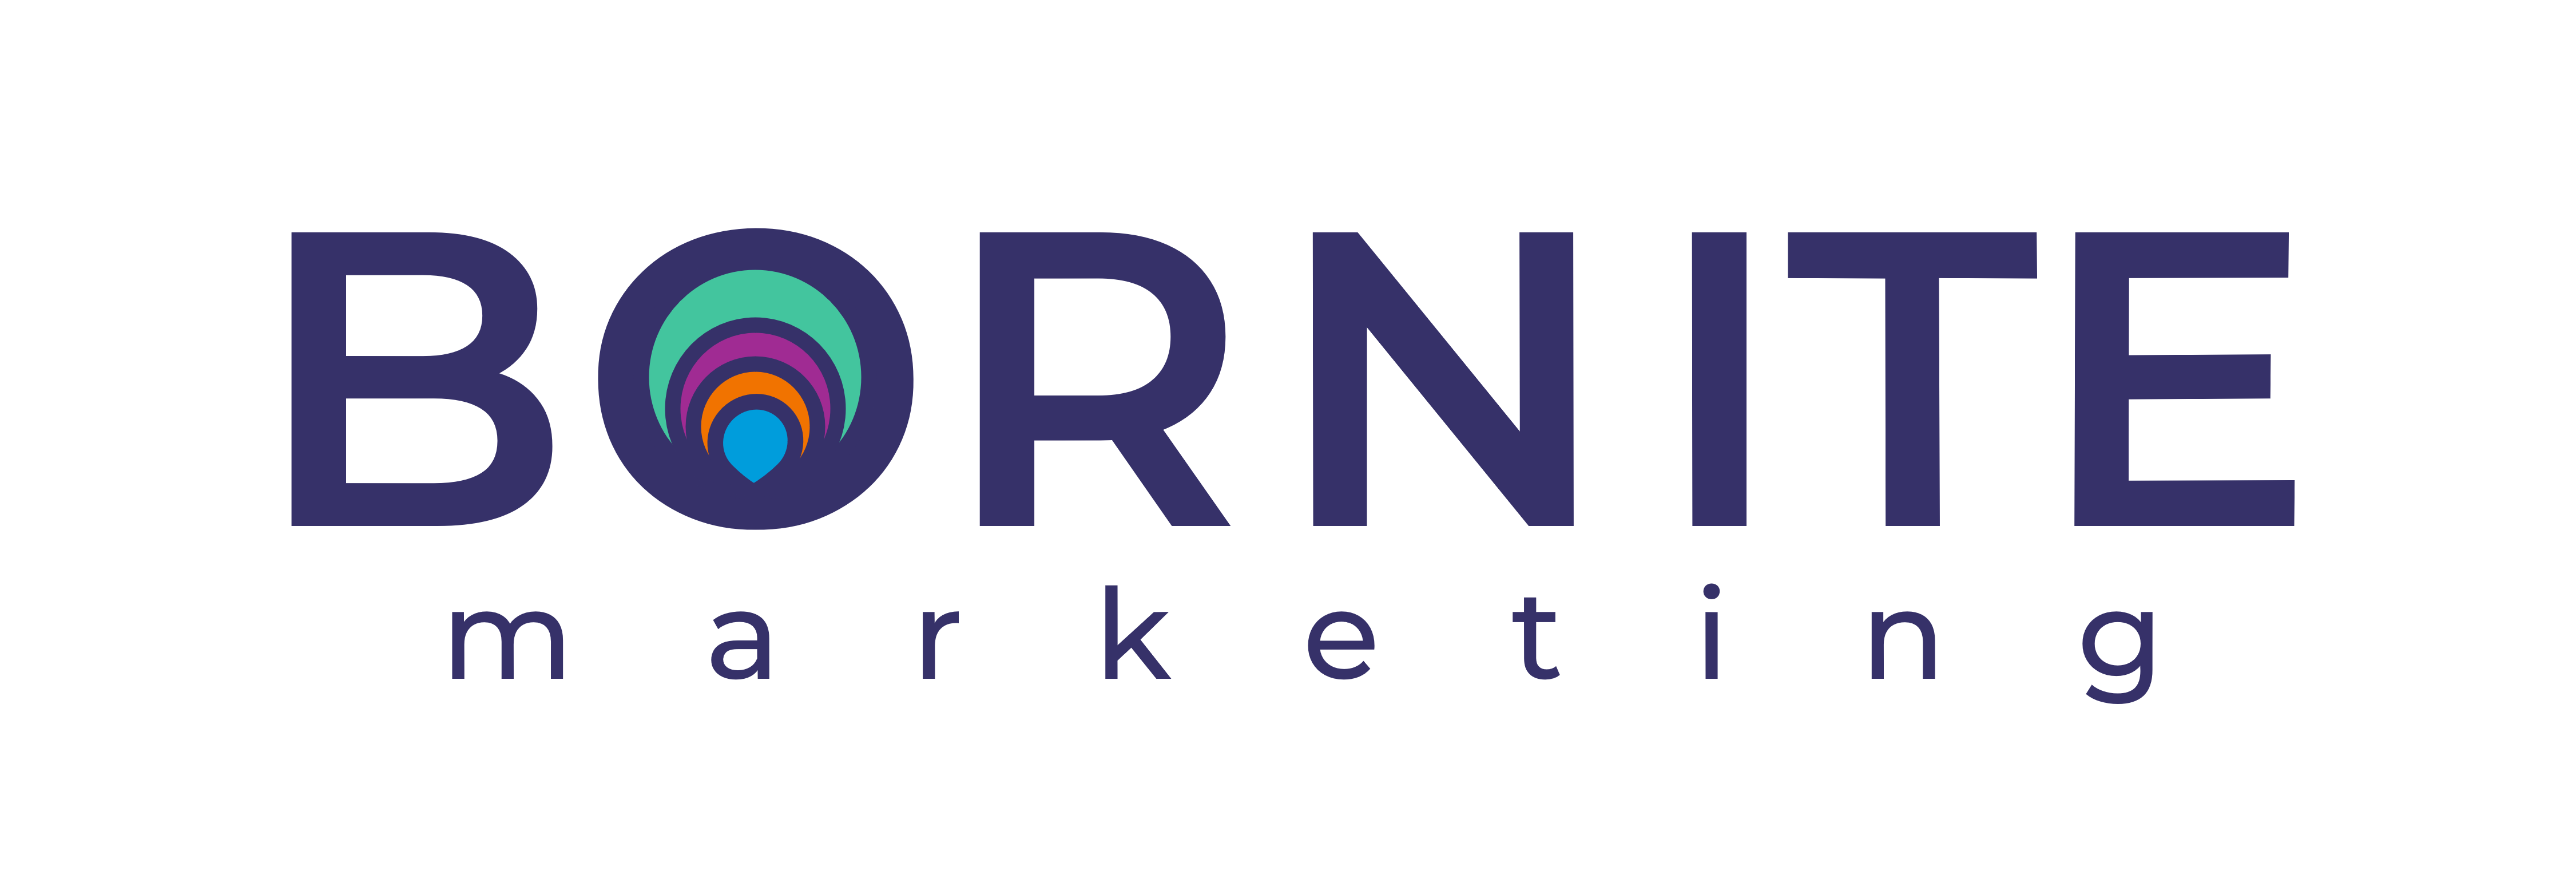 Bornite Marketing